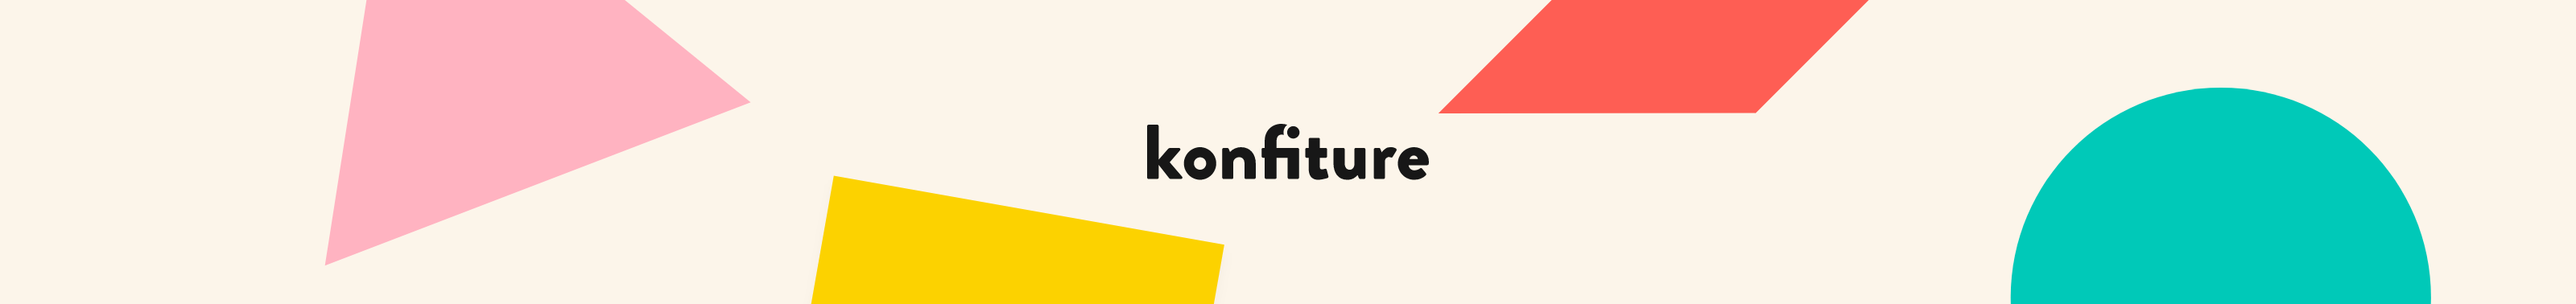 Konfiture 👋's profile banner